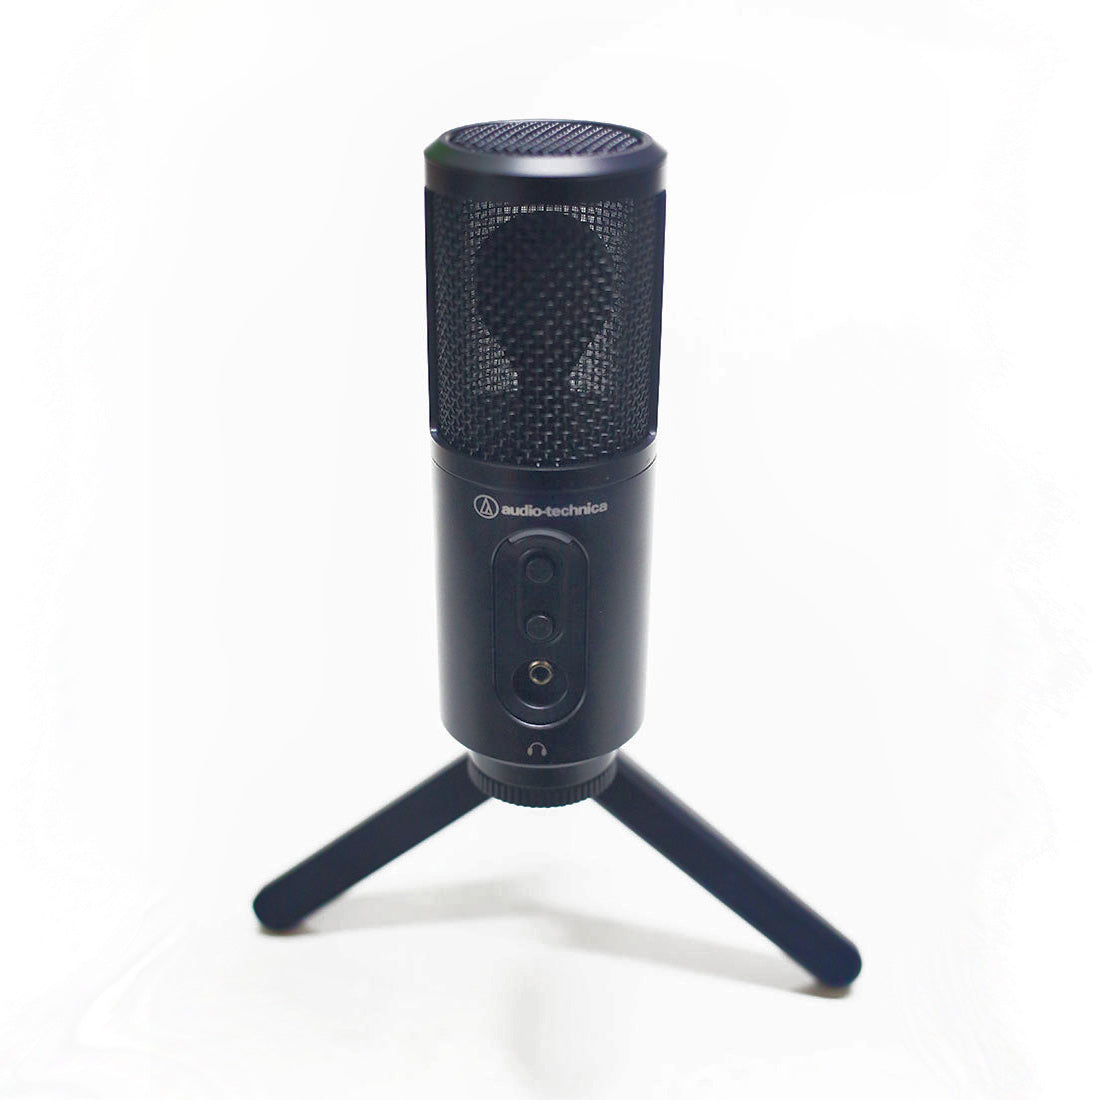 O Audio-Technica ATR2500x-USB é um microfone que vale a pena transmitir